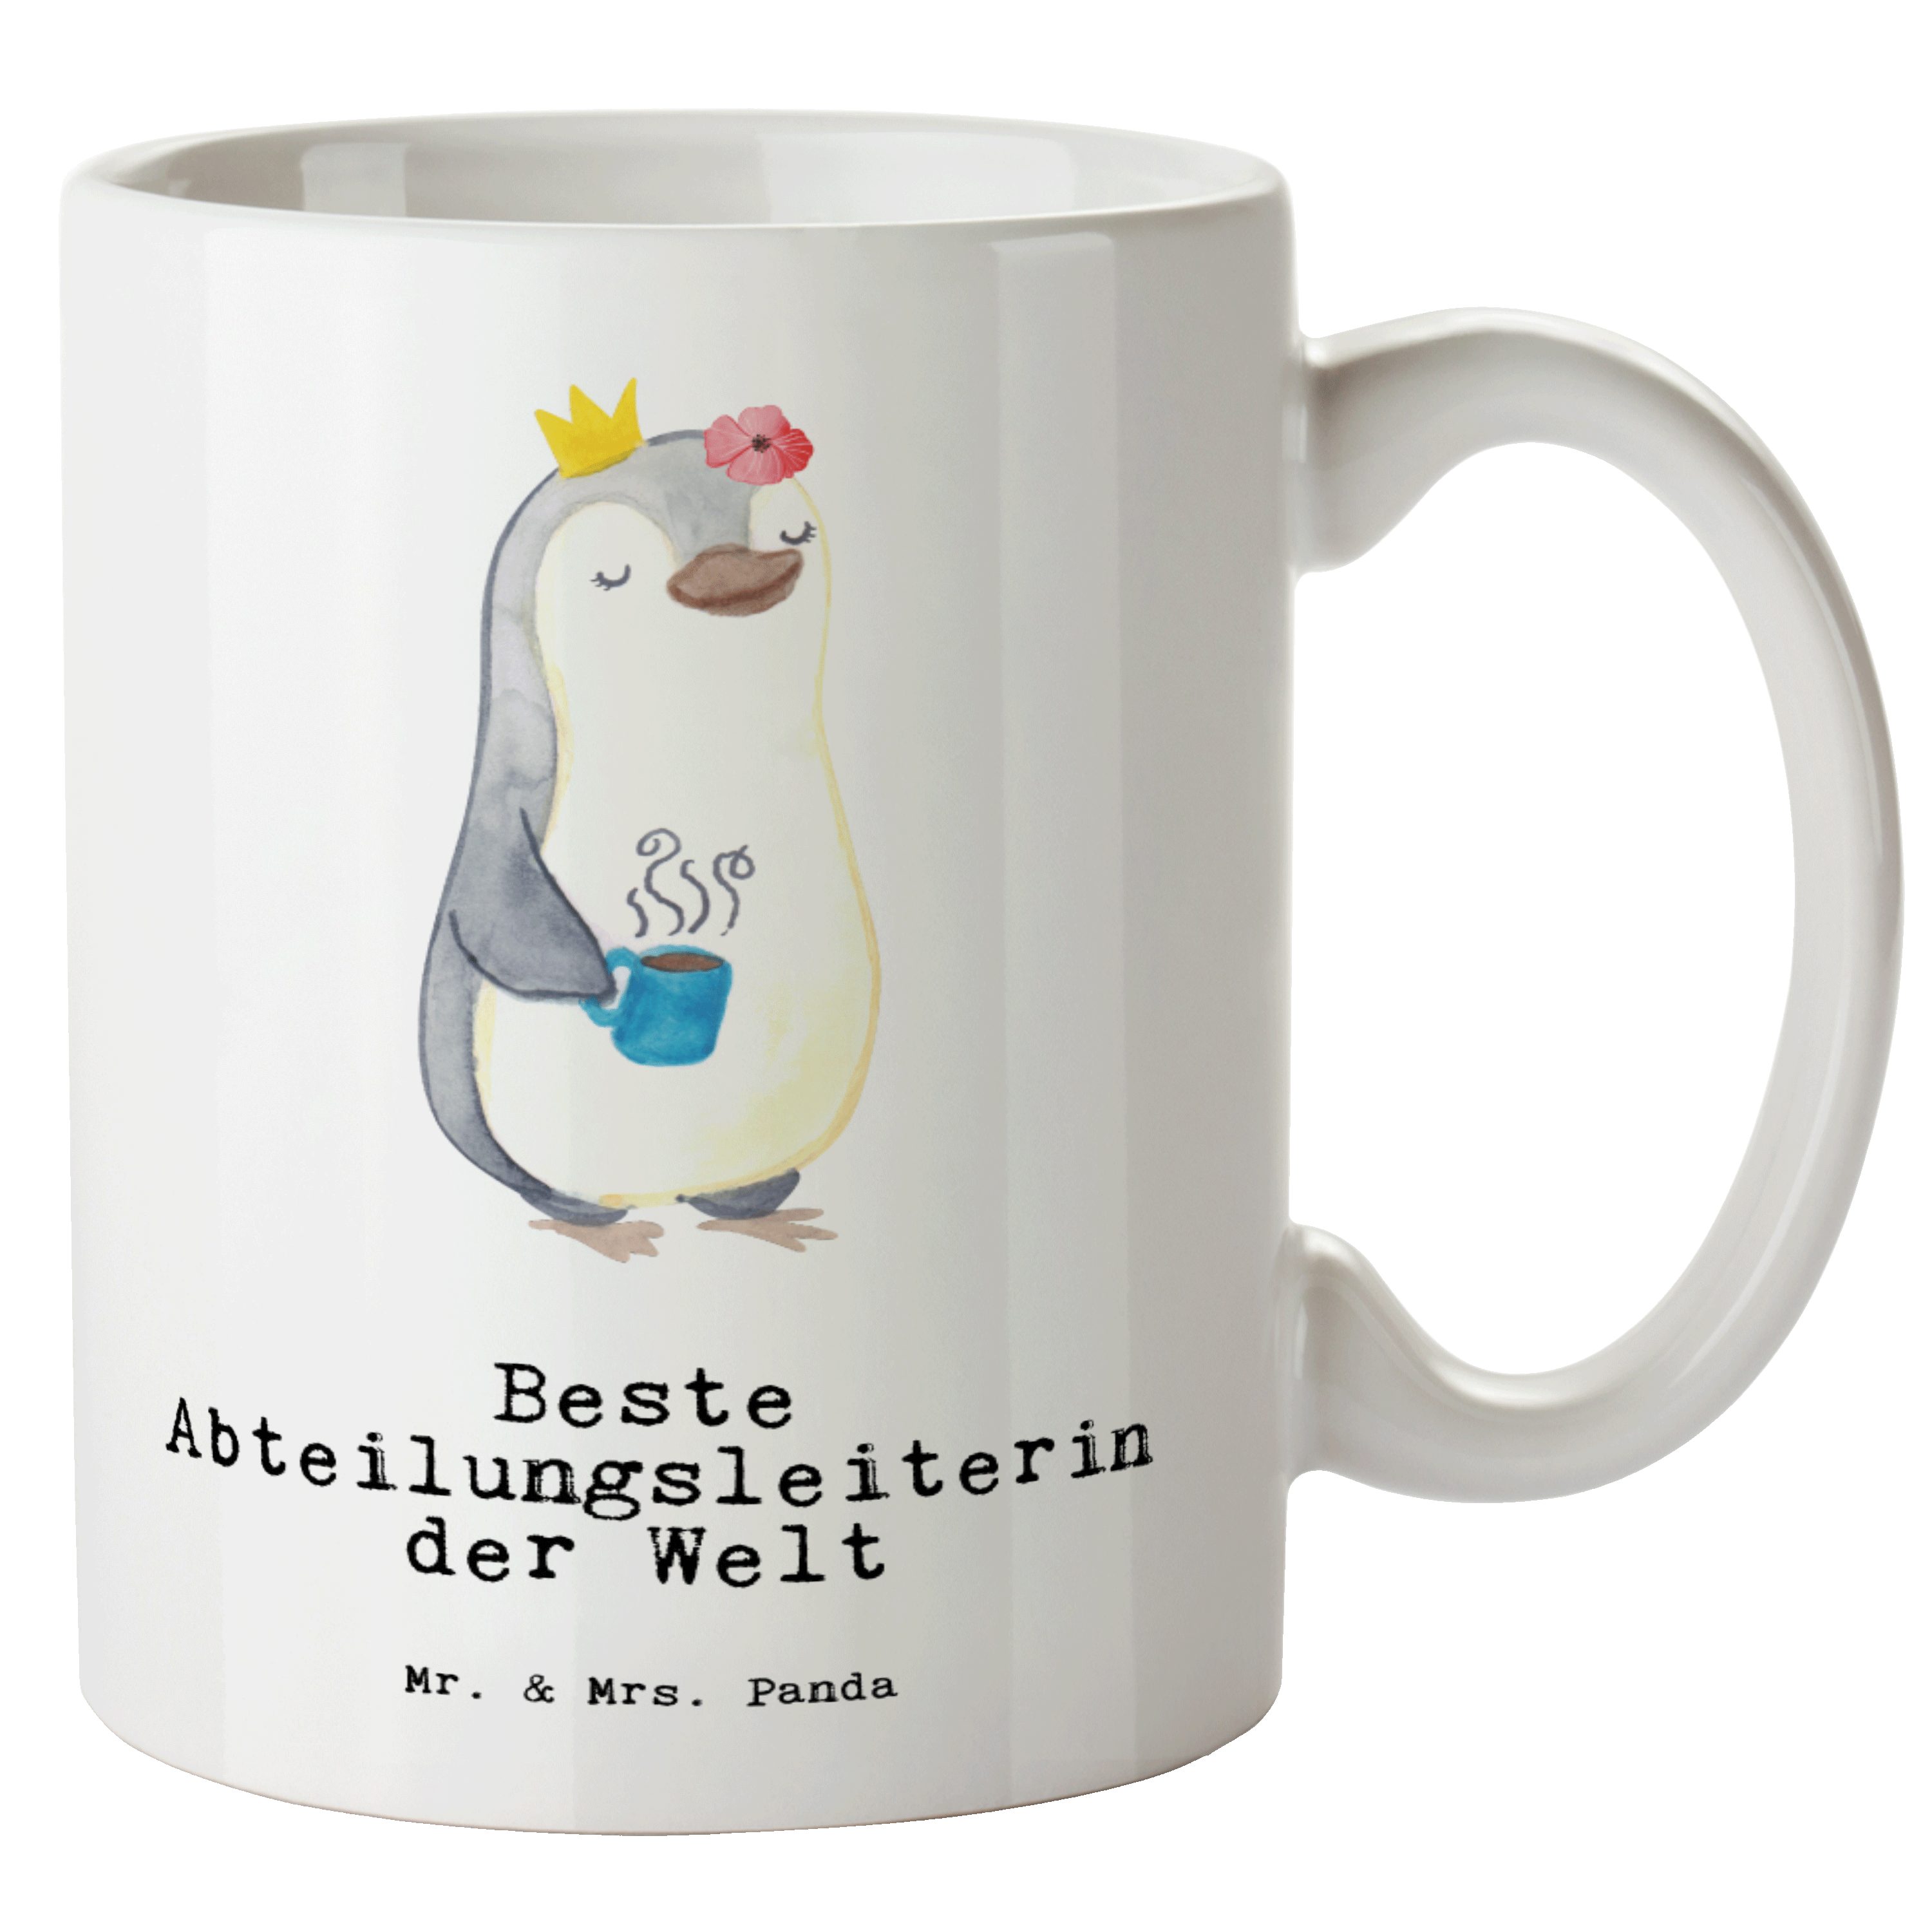 Mr. & Mrs. Panda Tasse Pinguin Beste Abteilungsleiterin der Welt - Weiß - Geschenk, Große Ta, XL Tasse Keramik